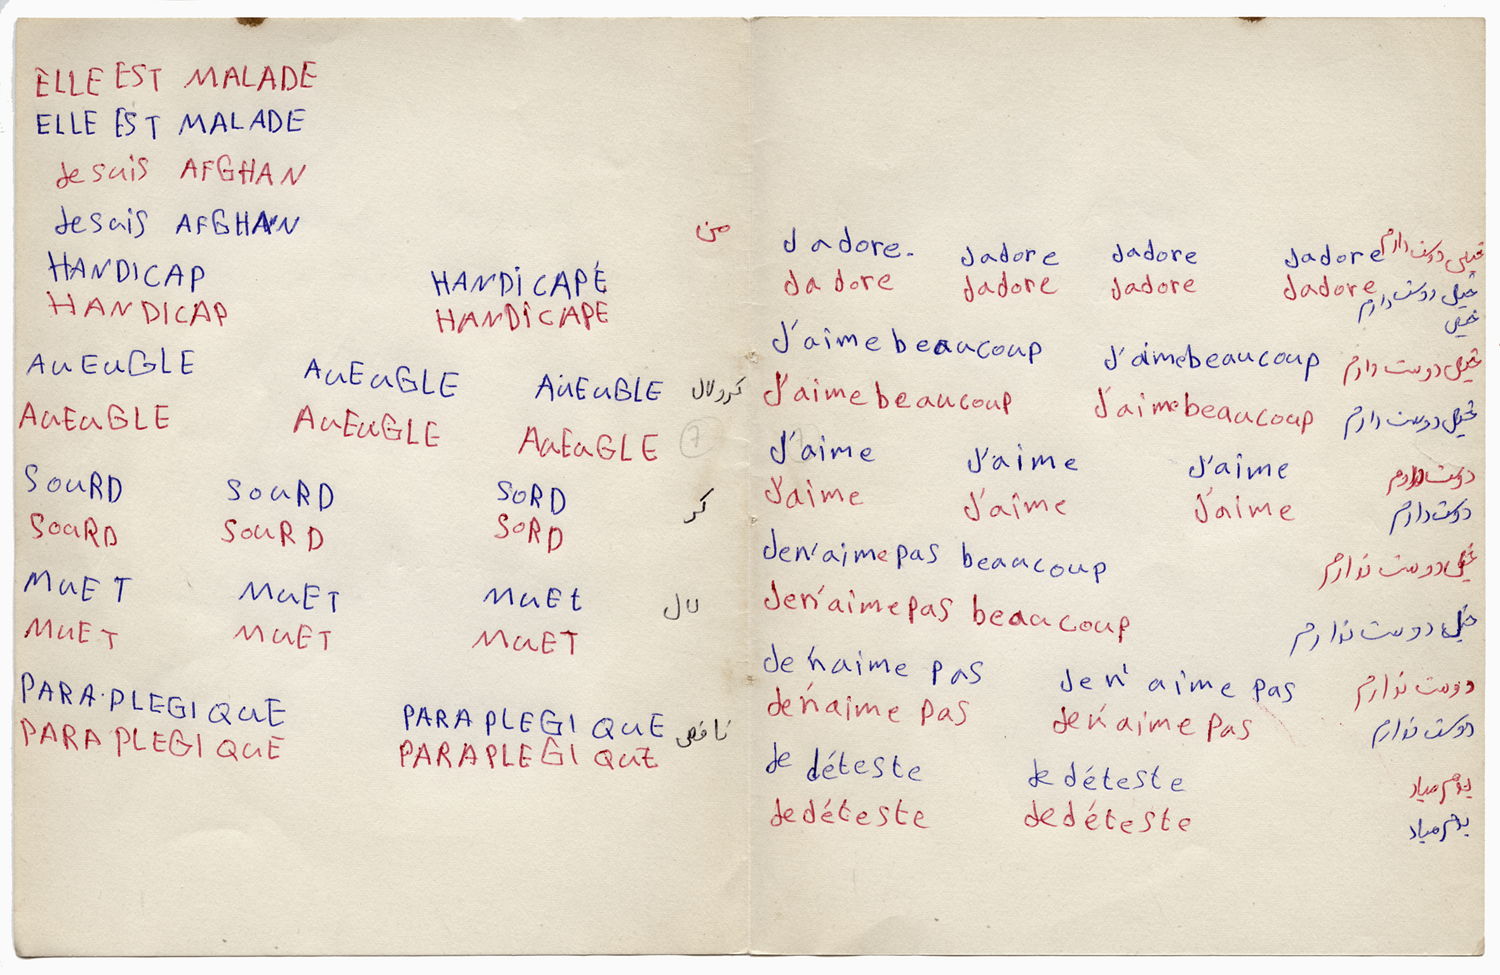 Pagina uit notieboekje van Mansour om Frans te leren, reeks Les Cahiers afghans, 2009 - 2010, 25 x 36 cm © Musée national de l'histoire de l'immigration, Parijs